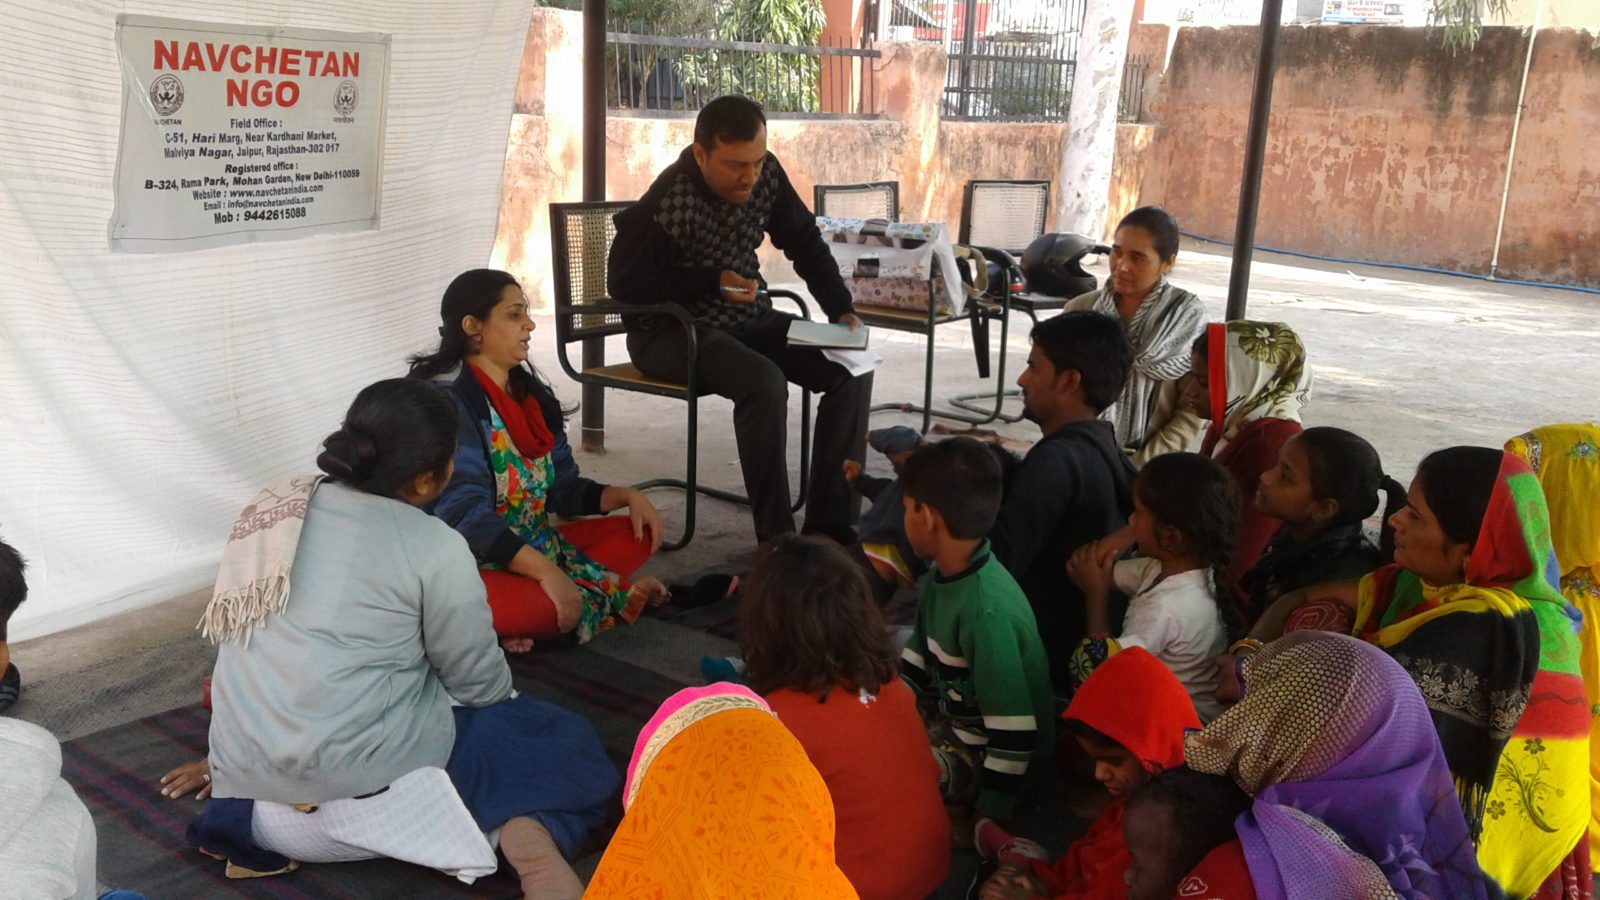 La comunità di Navchetan, India – Una ‘Nuova Consapevolezza’